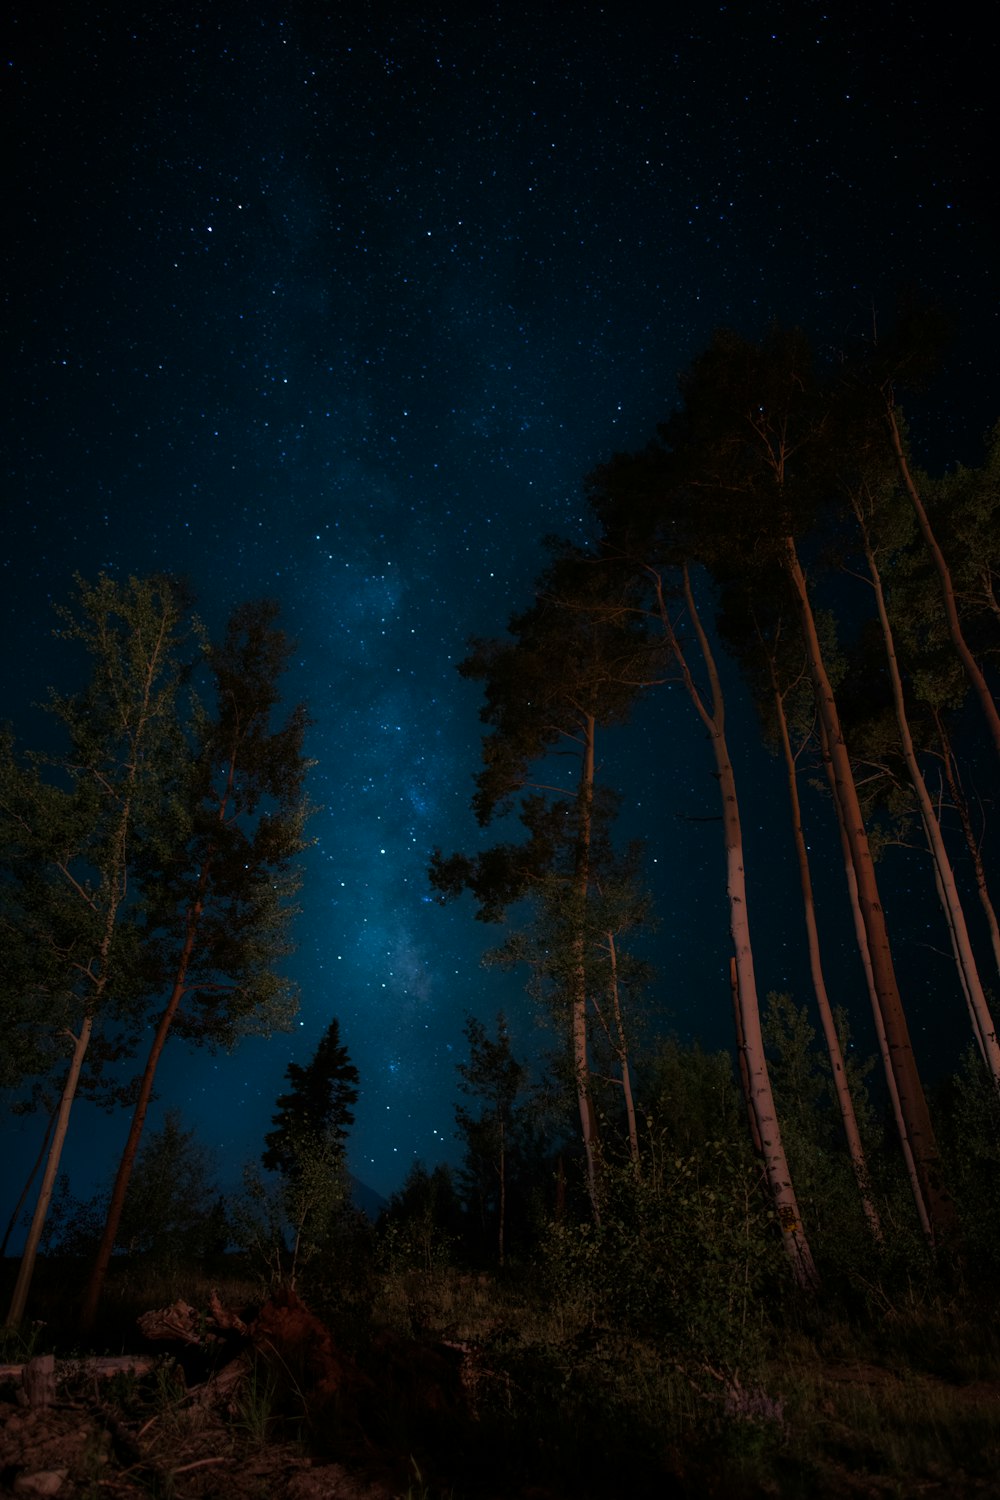 árboles verdes bajo la galaxia con estrellas